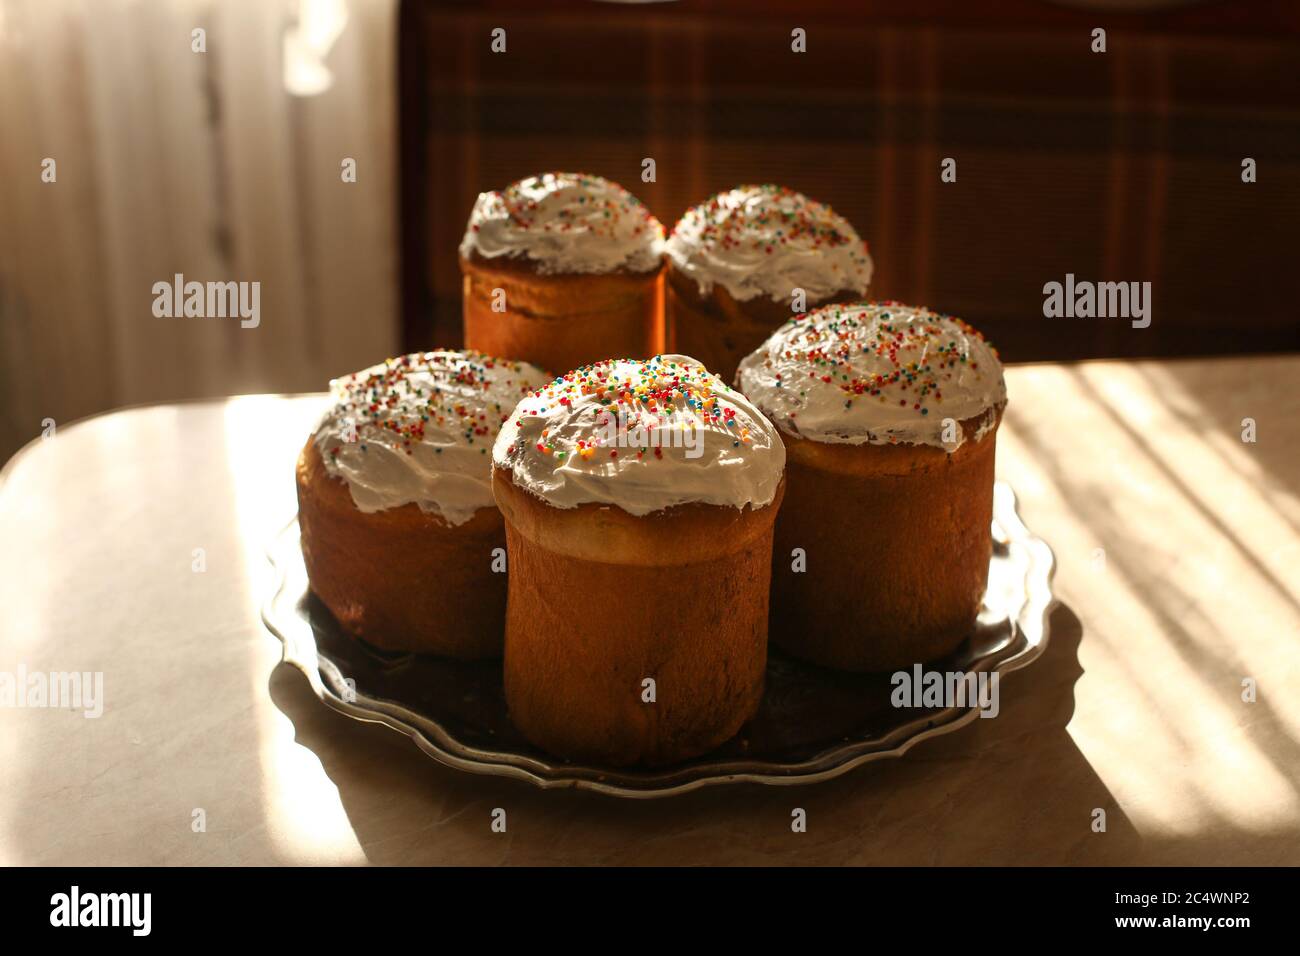 Autentico pane pasquale russo ortodosso tradizionale il kulich o il pascià, torte pasquali ricoperte di glassa di zucchero Foto Stock